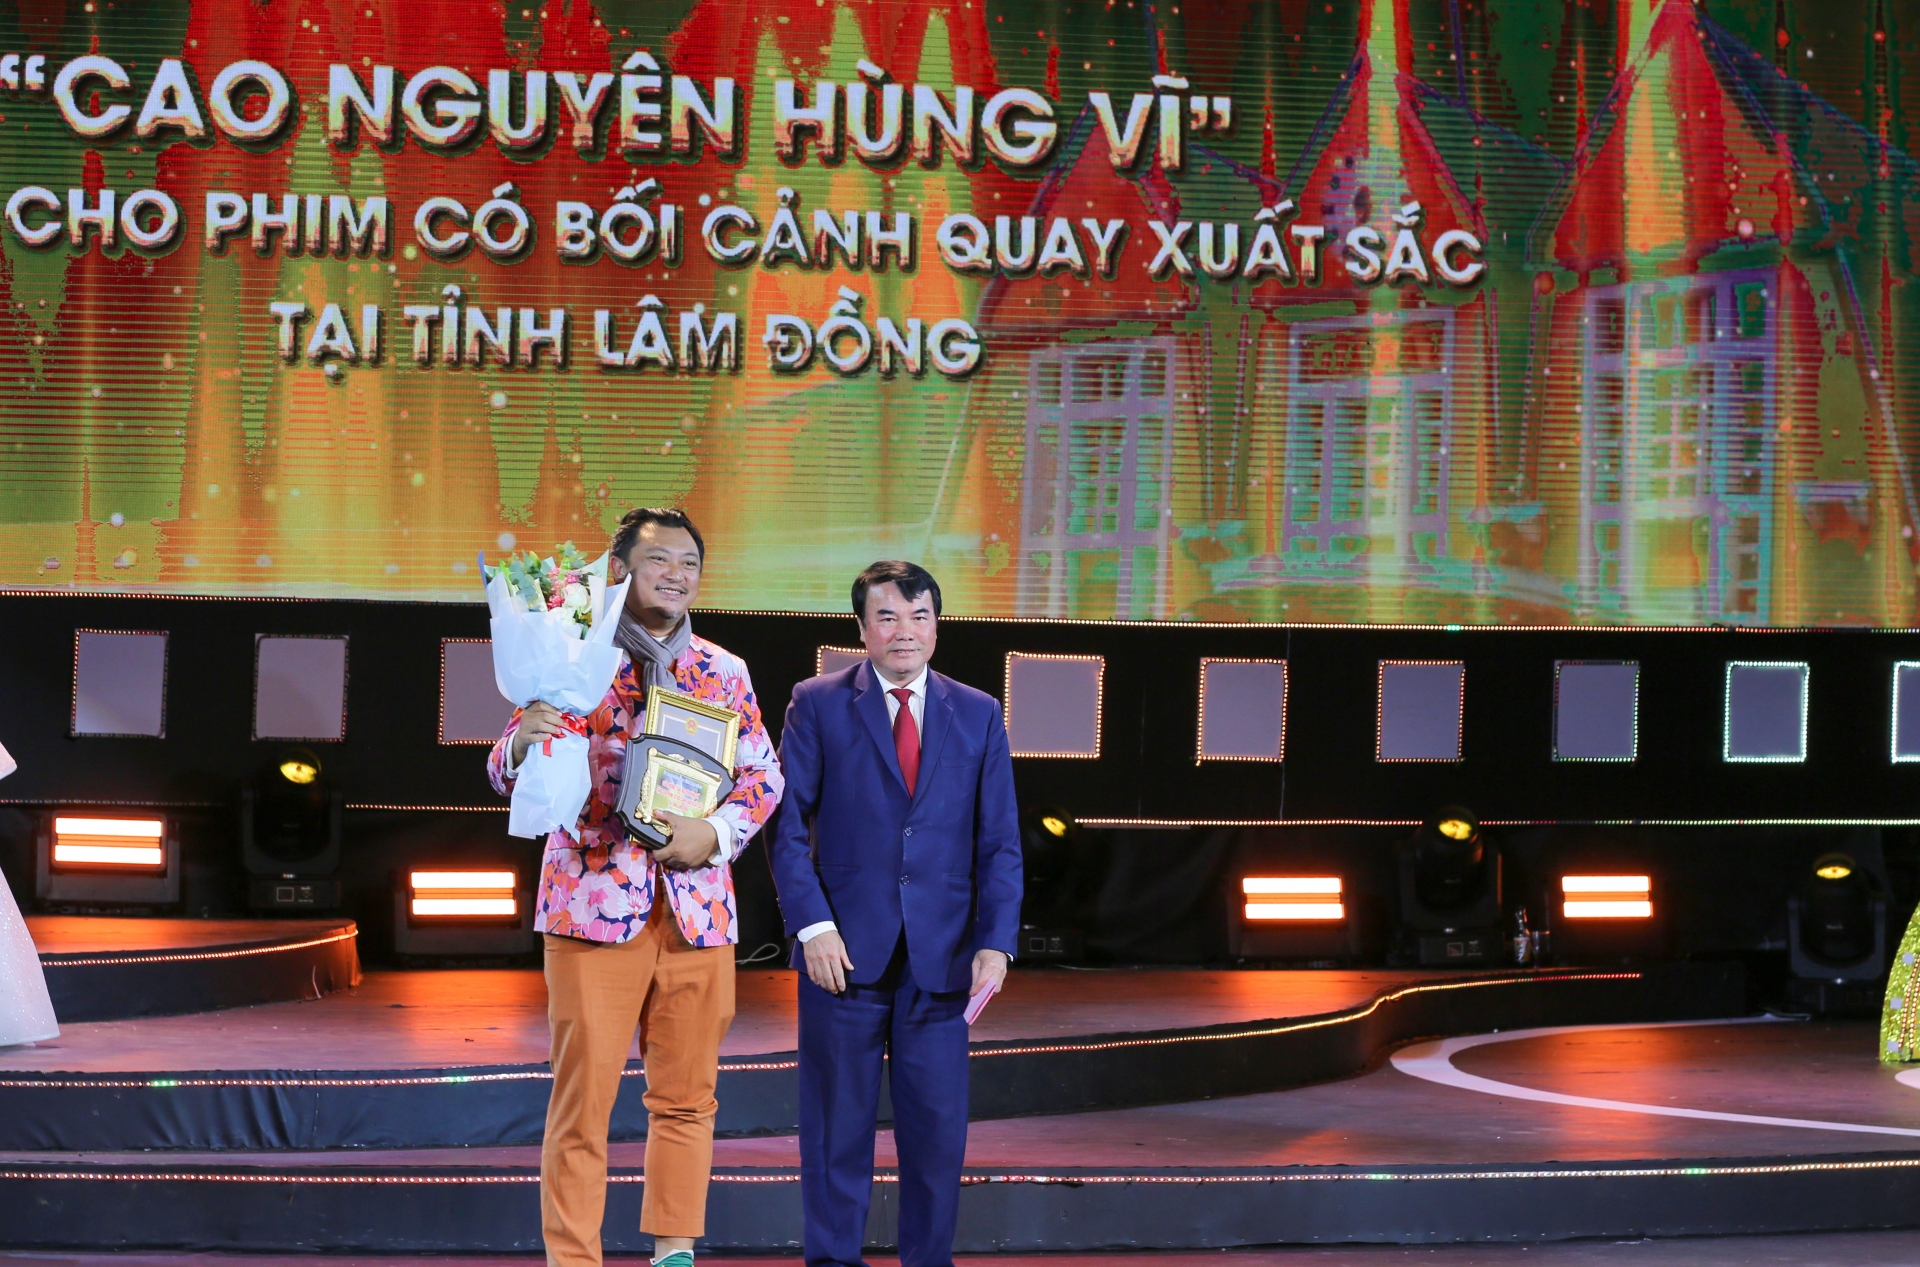 Phó Chủ tịch UBND tỉnh Lâm Đồng Phạm S trao Giải Cao nguyên hùng vĩ của UBND tỉnh Lâm Đồng cho phim Em và Trịnh